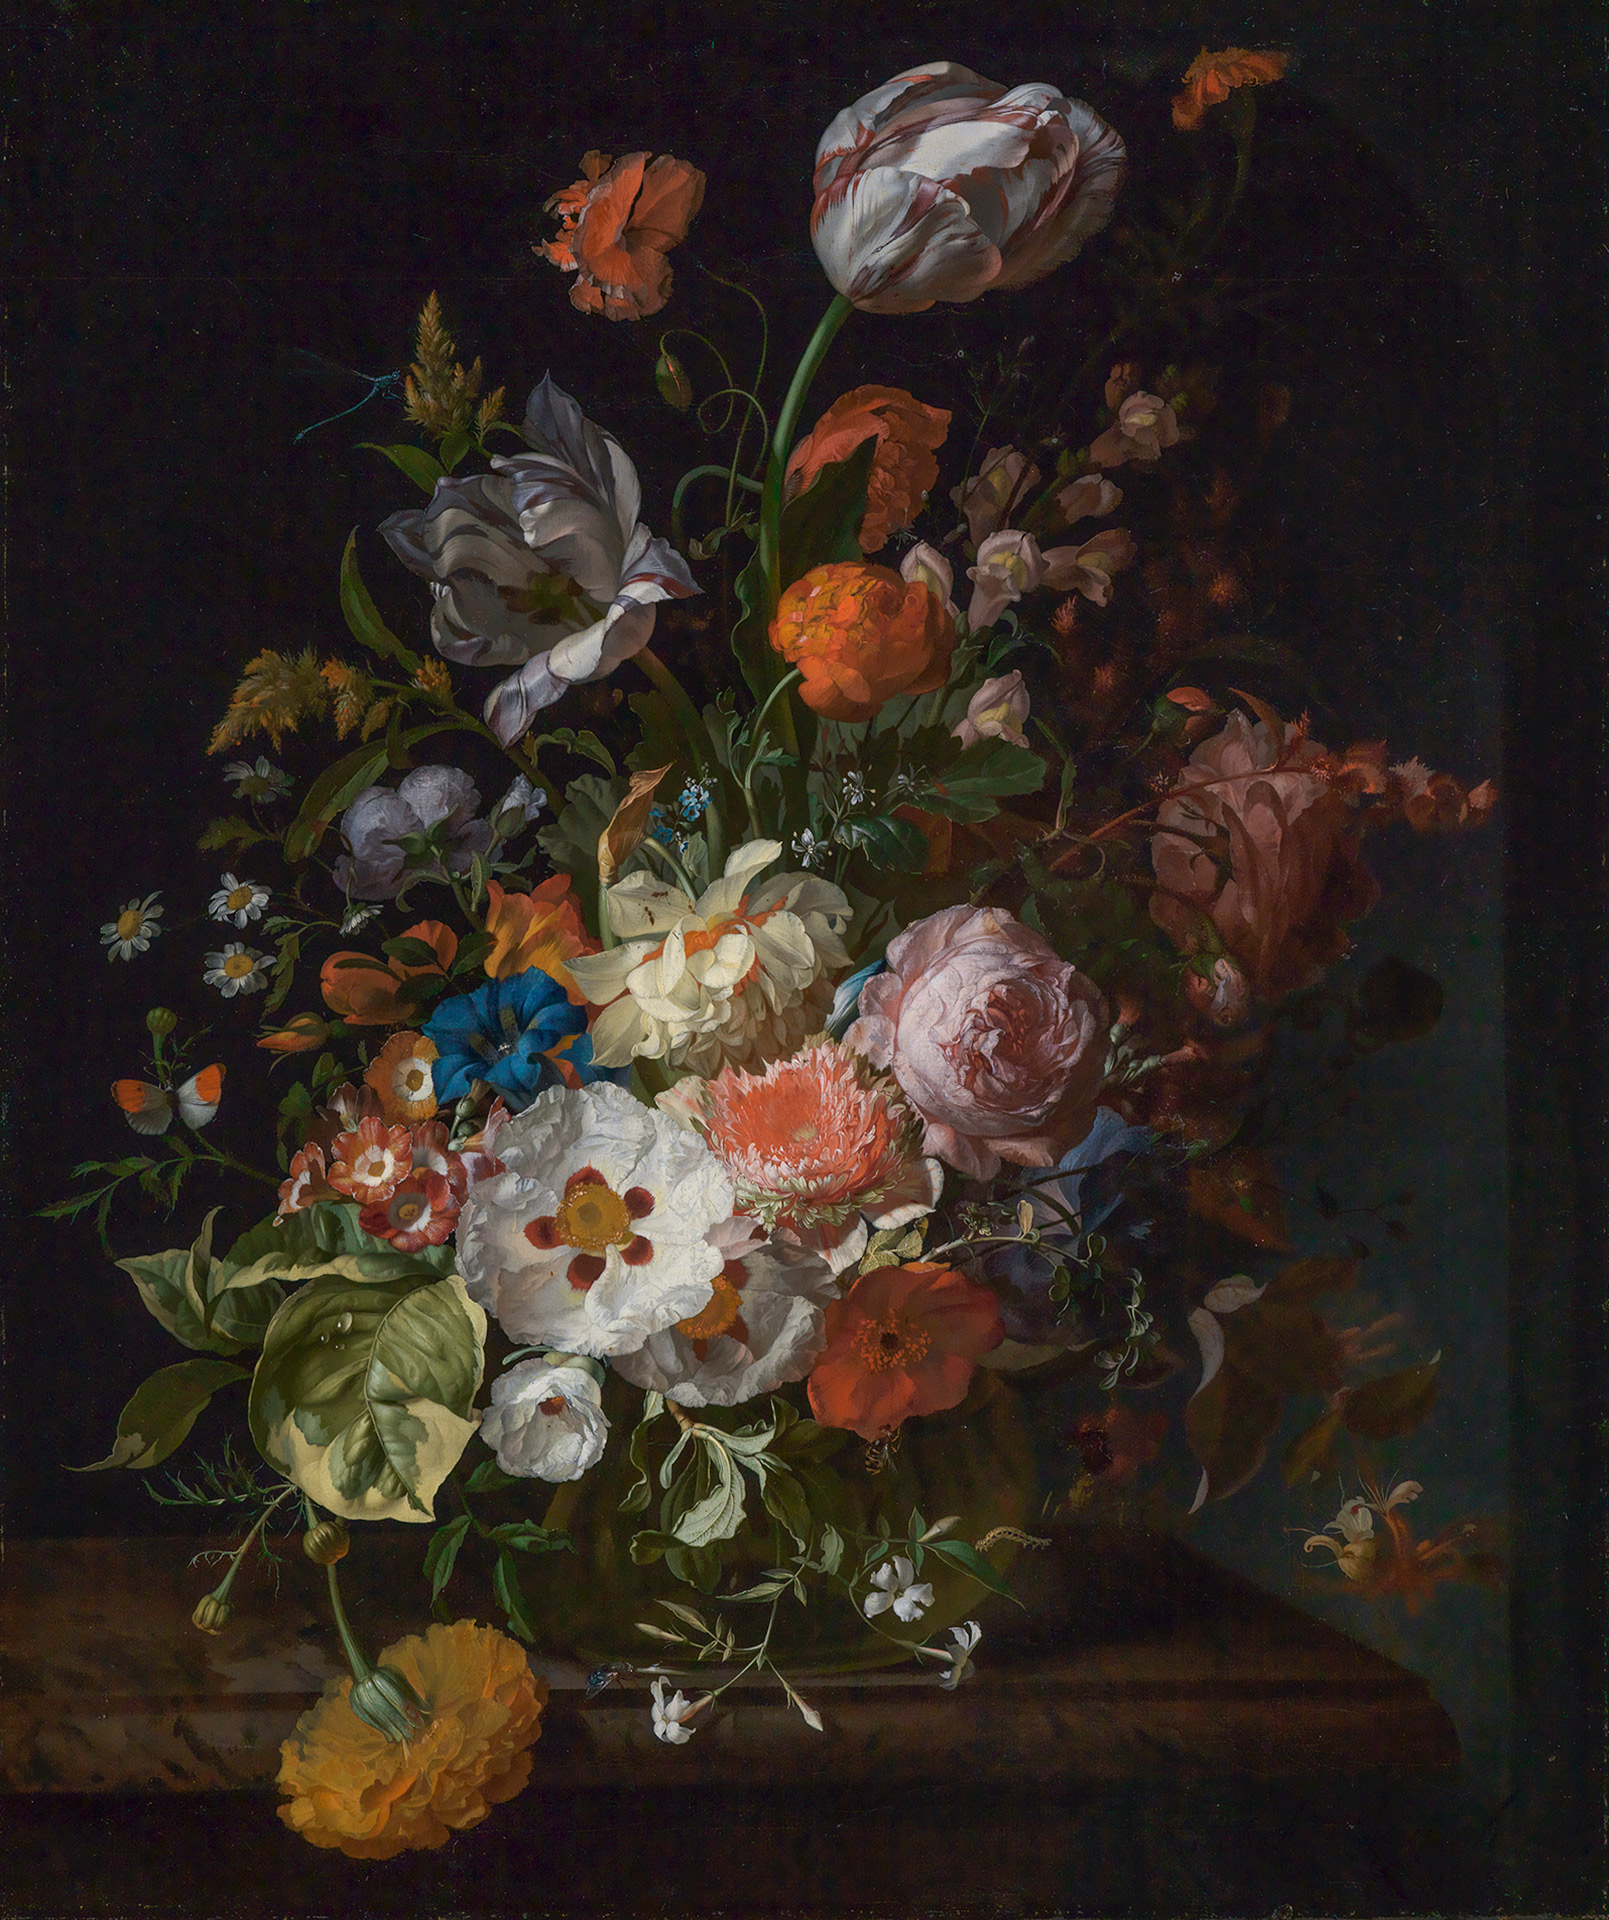 Abbildung des Gemäldes Blumenstrauß von Rachel Ruysch aus dem Jahr 1715. Es zeigt einen bunten und üppigen Blumenstrauß.